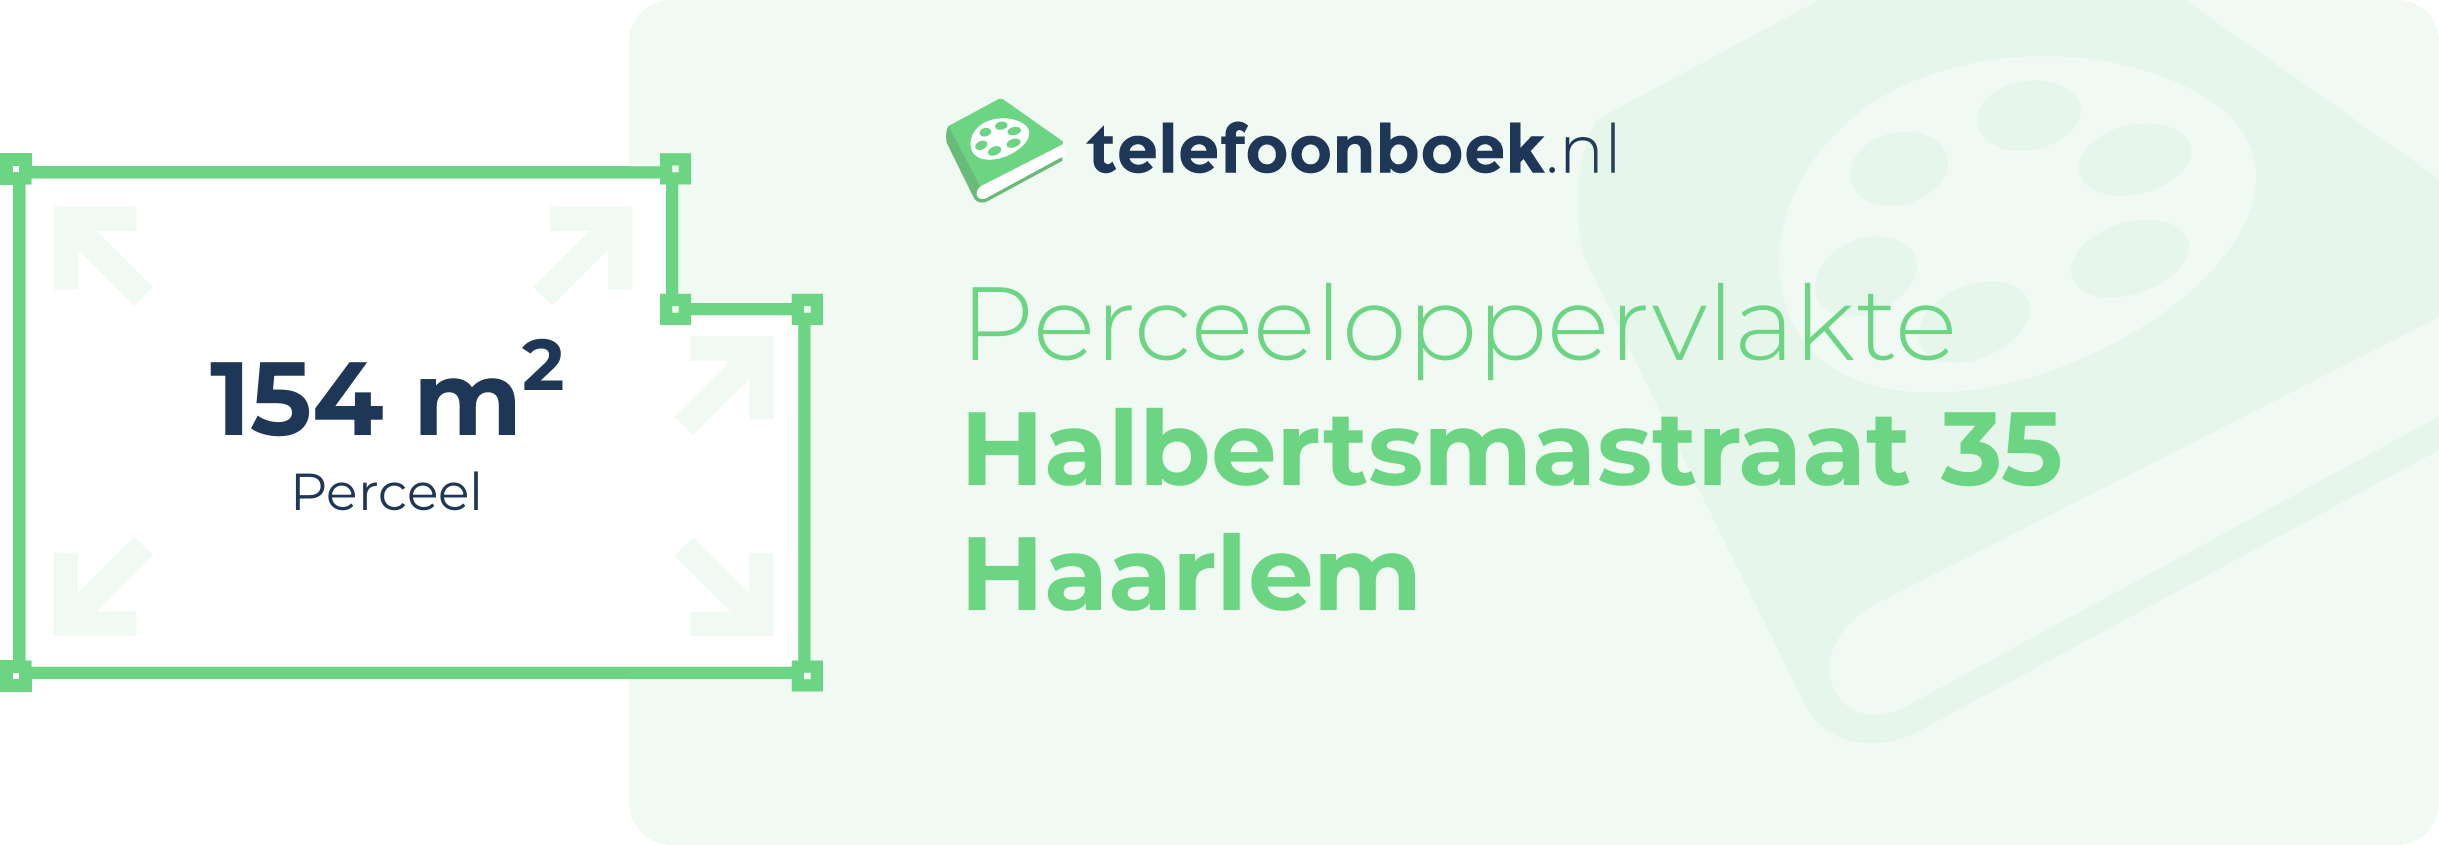 Perceeloppervlakte Halbertsmastraat 35 Haarlem